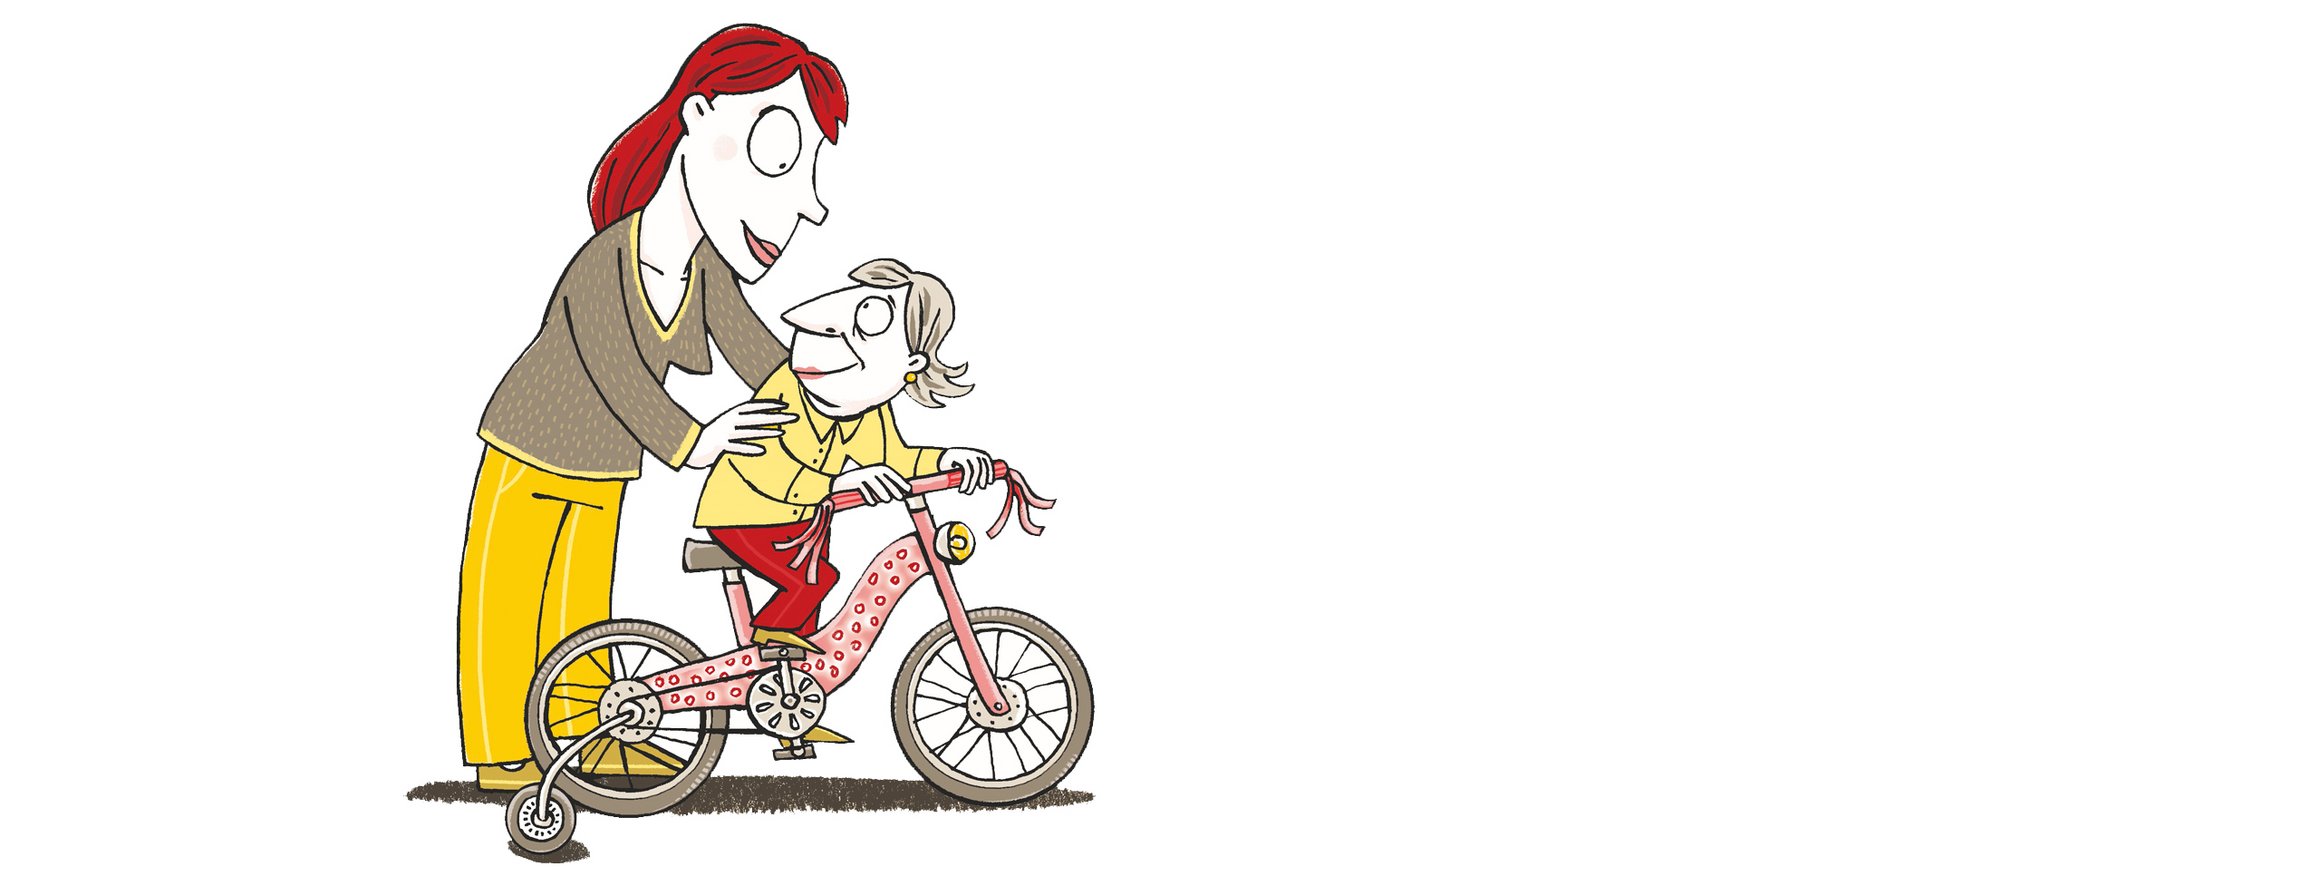 Die Illustration zeigt eine Frau, die ihrer Mutter, die auf einem Fahrrad mit Stückrädern sitzt, wie ein Kleinkind helfend beisteht